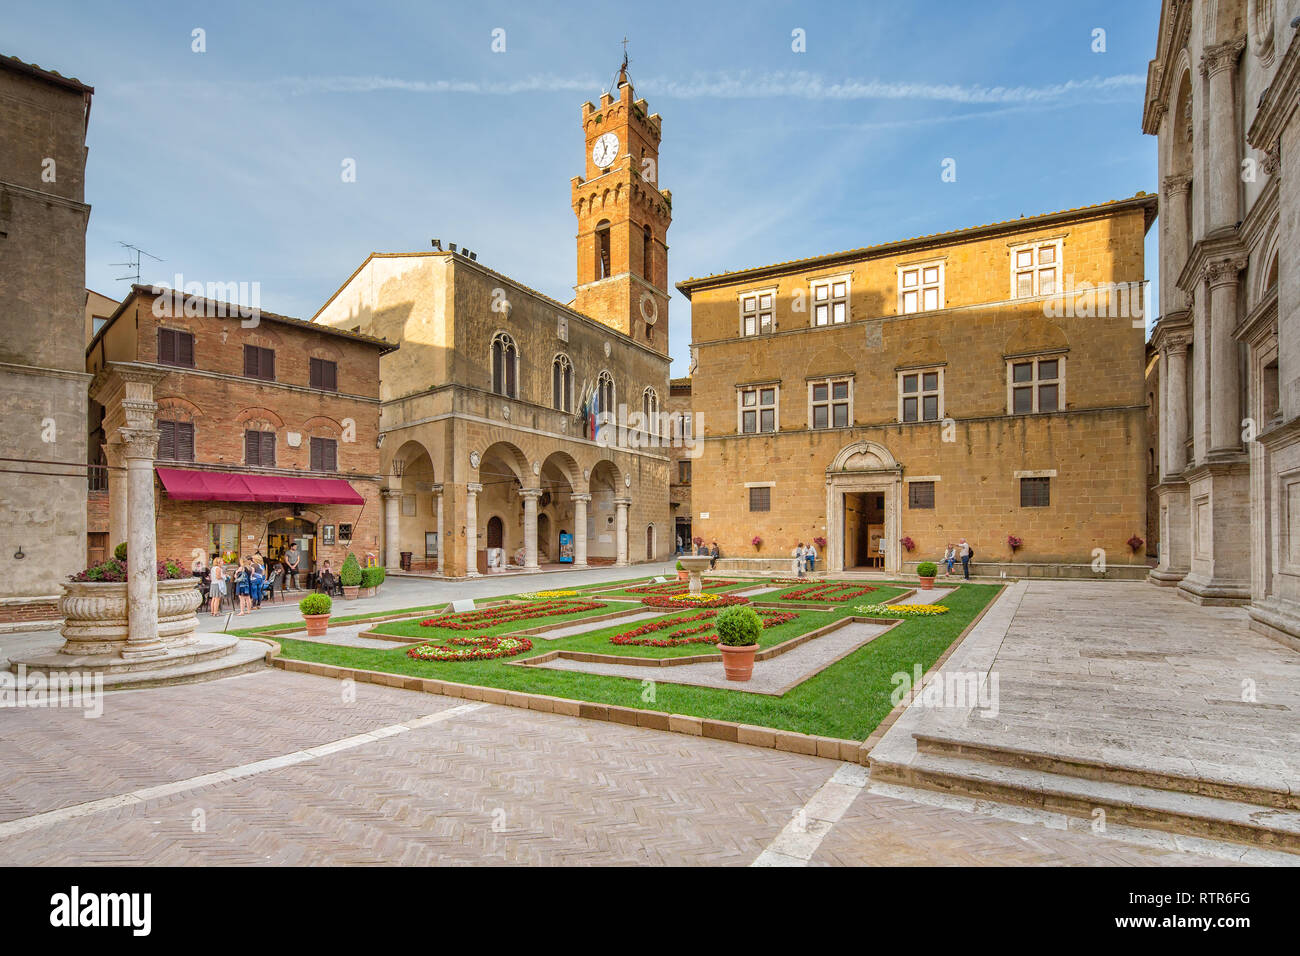 Pienza, Toscana/Italia - 10 de mayo de 2016: idílico con una fuente, plaza del ayuntamiento y de la Catedral de Pienza.turistas y gente local en la Piazza. Foto de stock